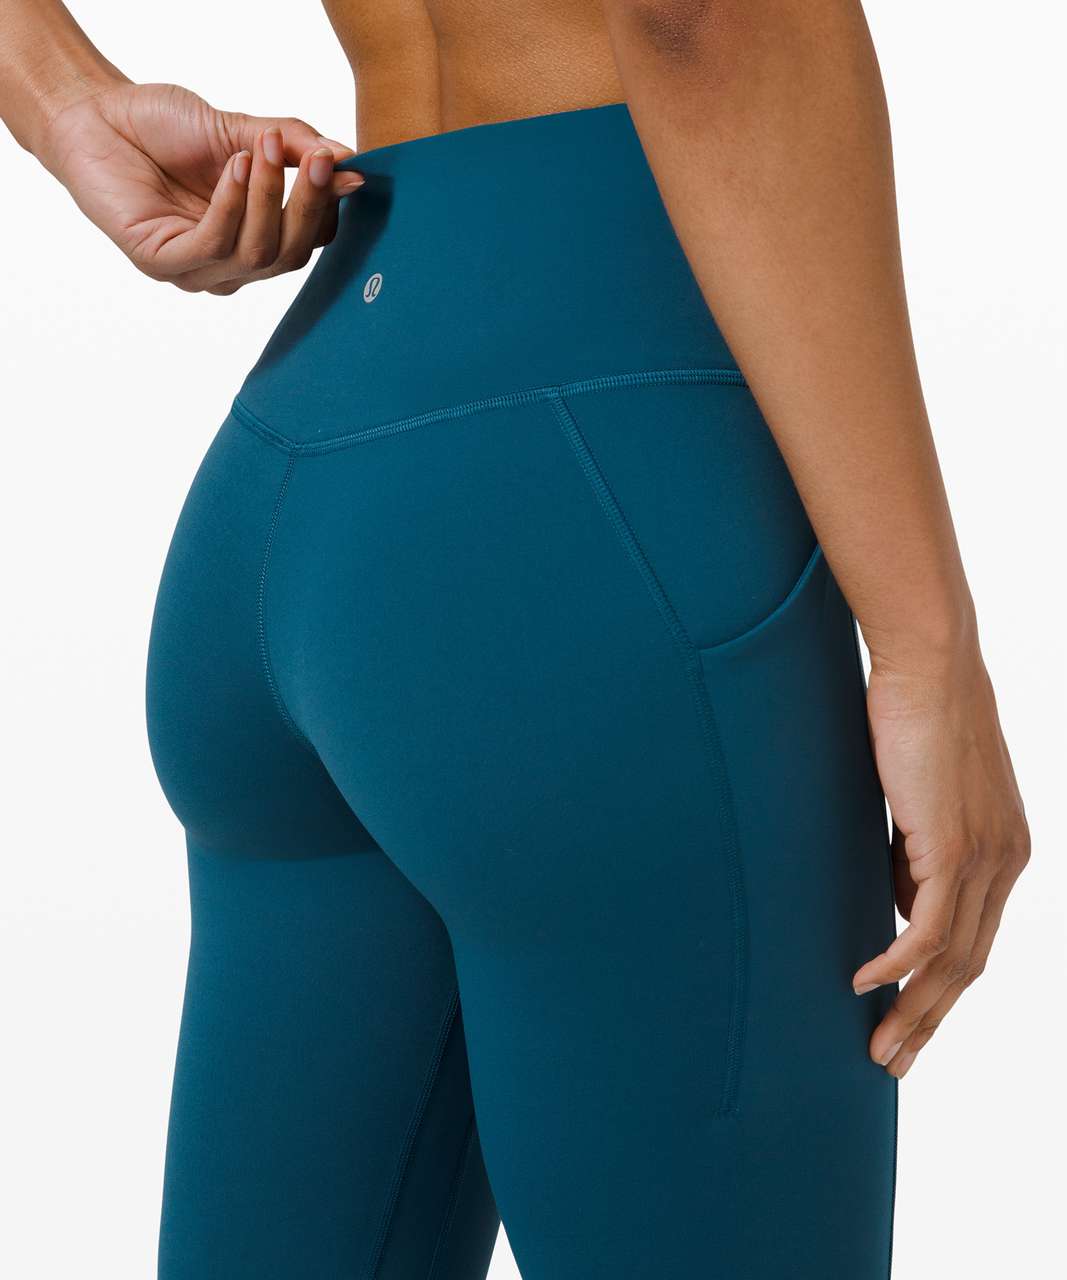 NEW Women Lululemon Align Pant with Pockets 25 Blue Borealis Size